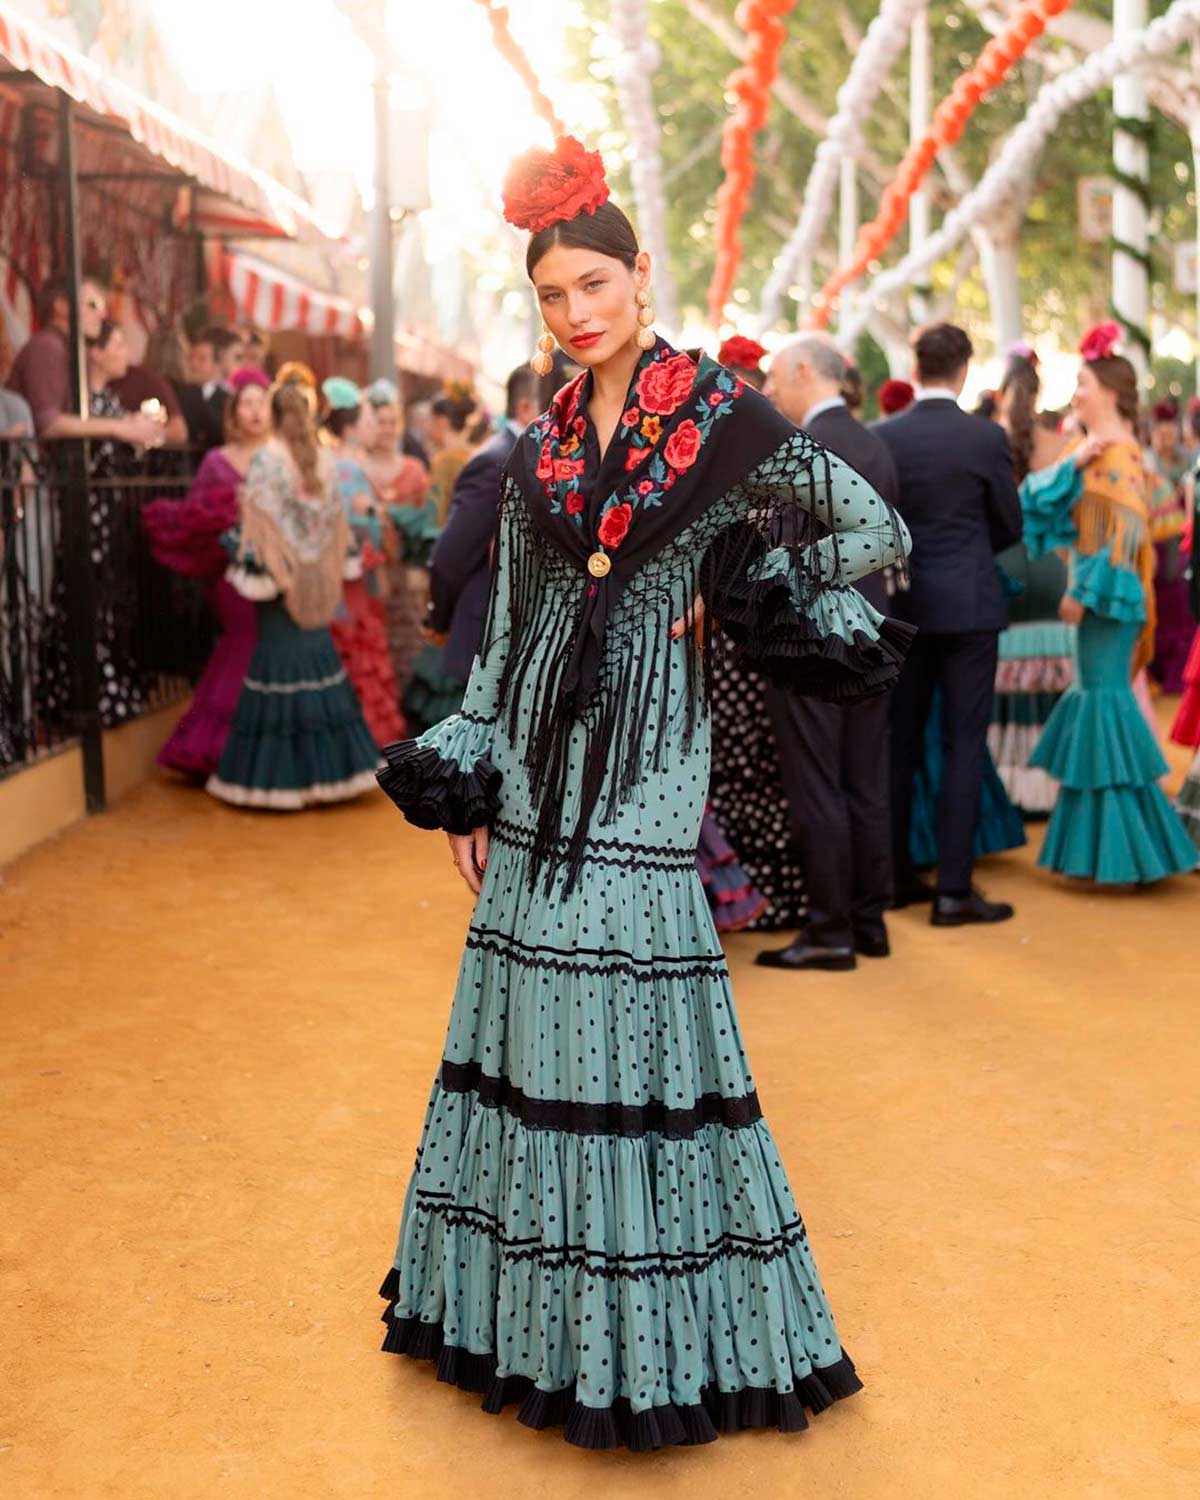 Carmen Santa Cruz apostó por un vestido canastero de Rocío Peralta en color azul verdoso y con pequeños lunares en negro. El mantón, con flores rojas al igual que la flor de la cabeza. 